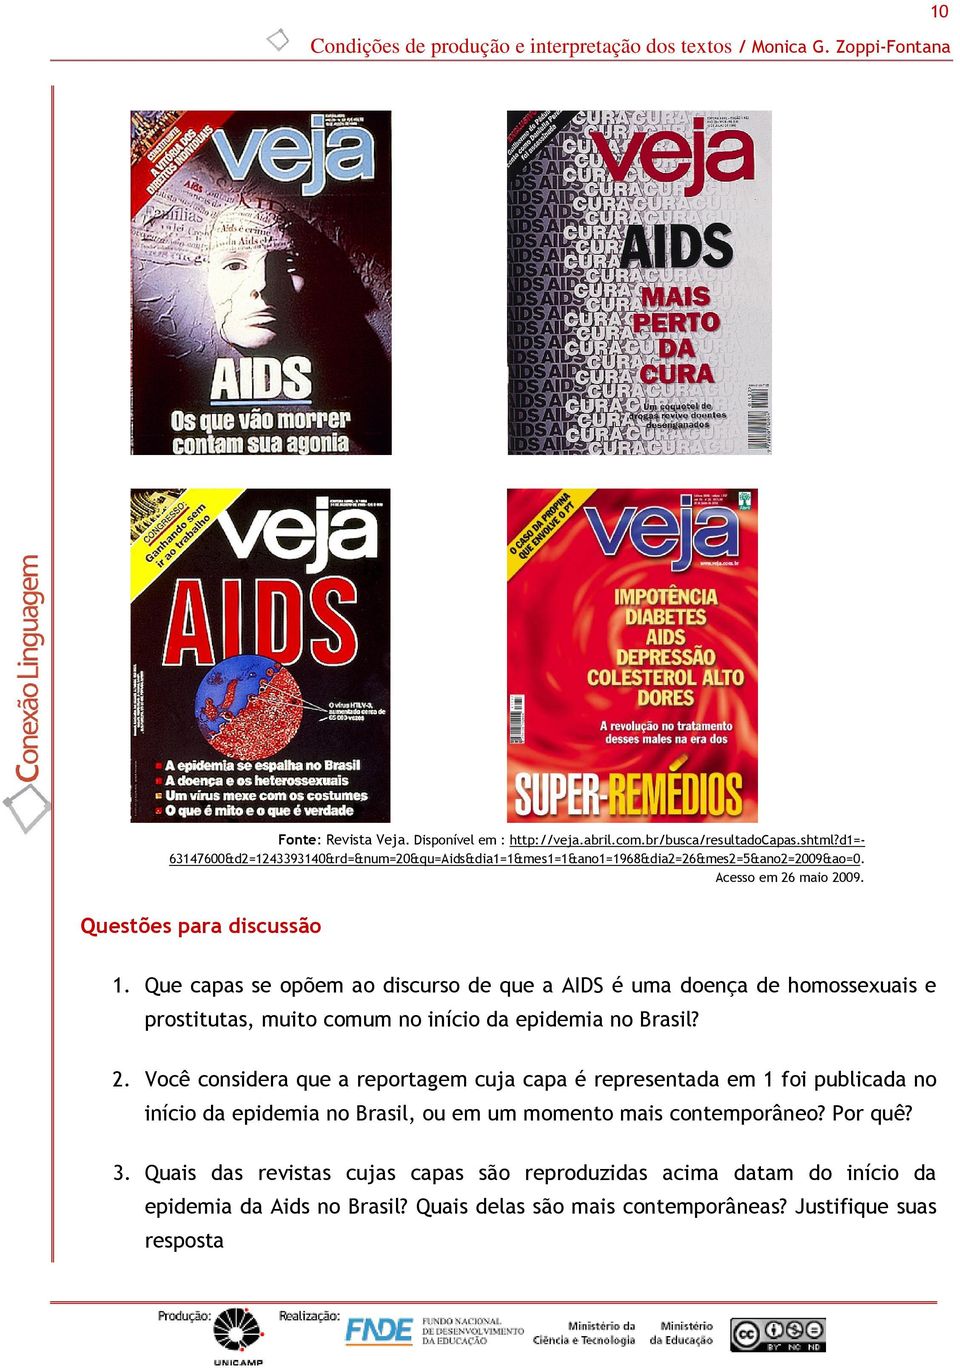 Que capas se opõem ao discurso de que a AIDS é uma doença de homossexuais e prostitutas, muito comum no início da epidemia no Brasil? 2.